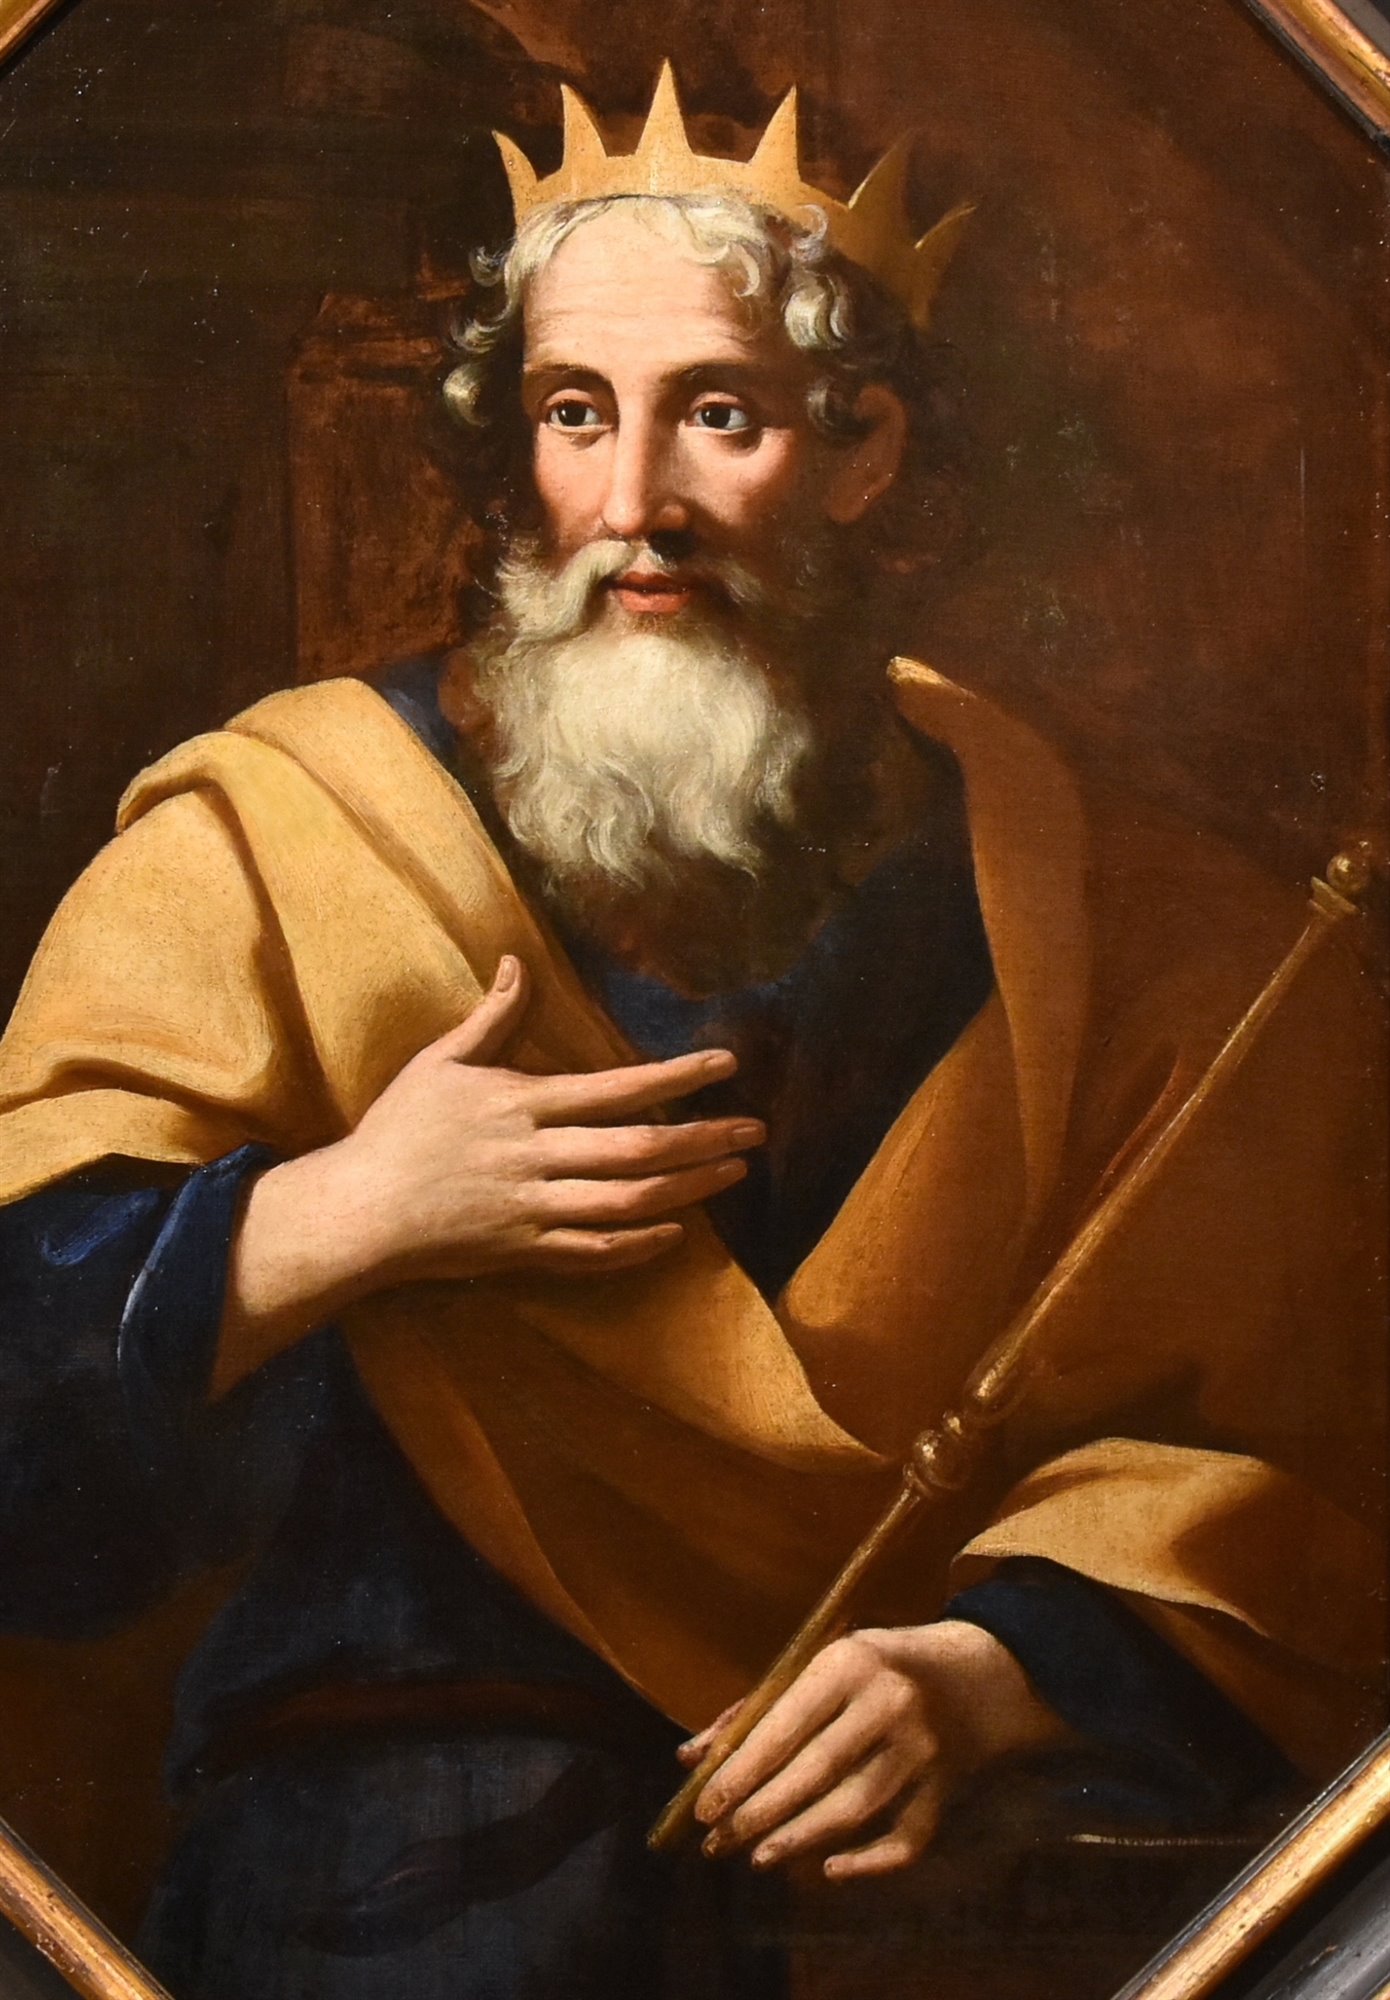 Ritratto del Re Salomone